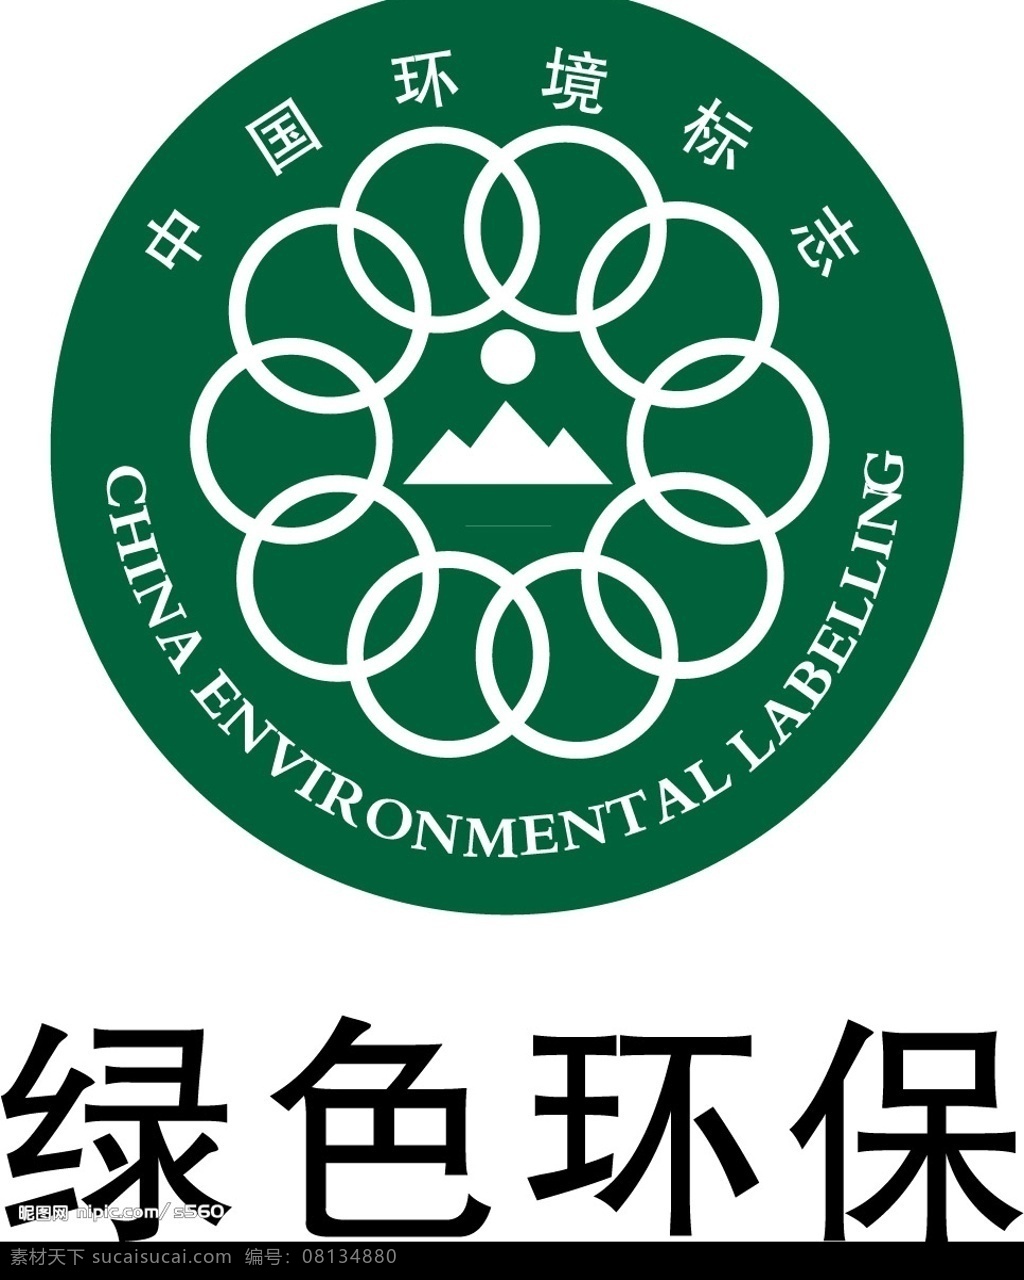 绿色环保标识 绿色 环保 标识标志图标 公共标识标志 矢量图库